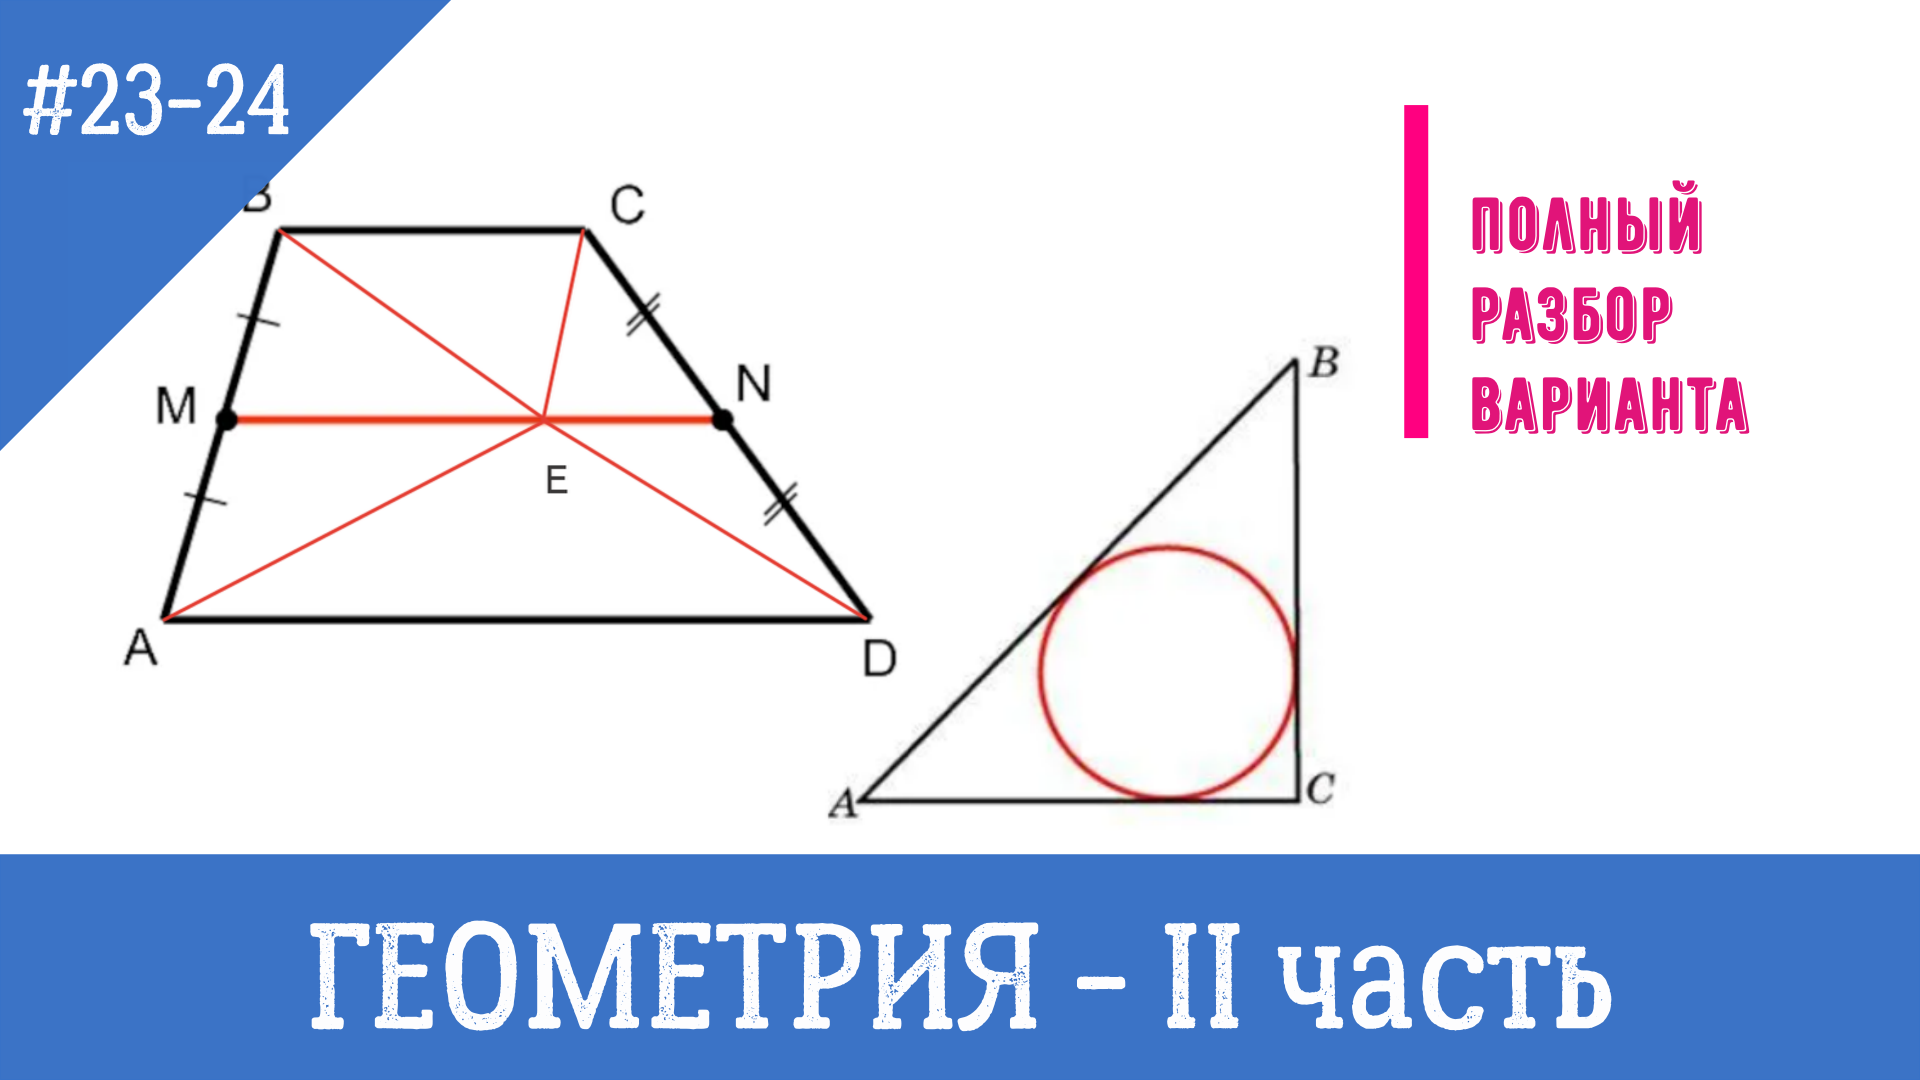 Геометрия огэ 23. Задачи по геометрии из ОГЭ. Геометрия ОГЭ 23 задание. ОГЭ математика решение задач блок геометрия. Критерии оценки решения геометрических задач на ОГЭ.